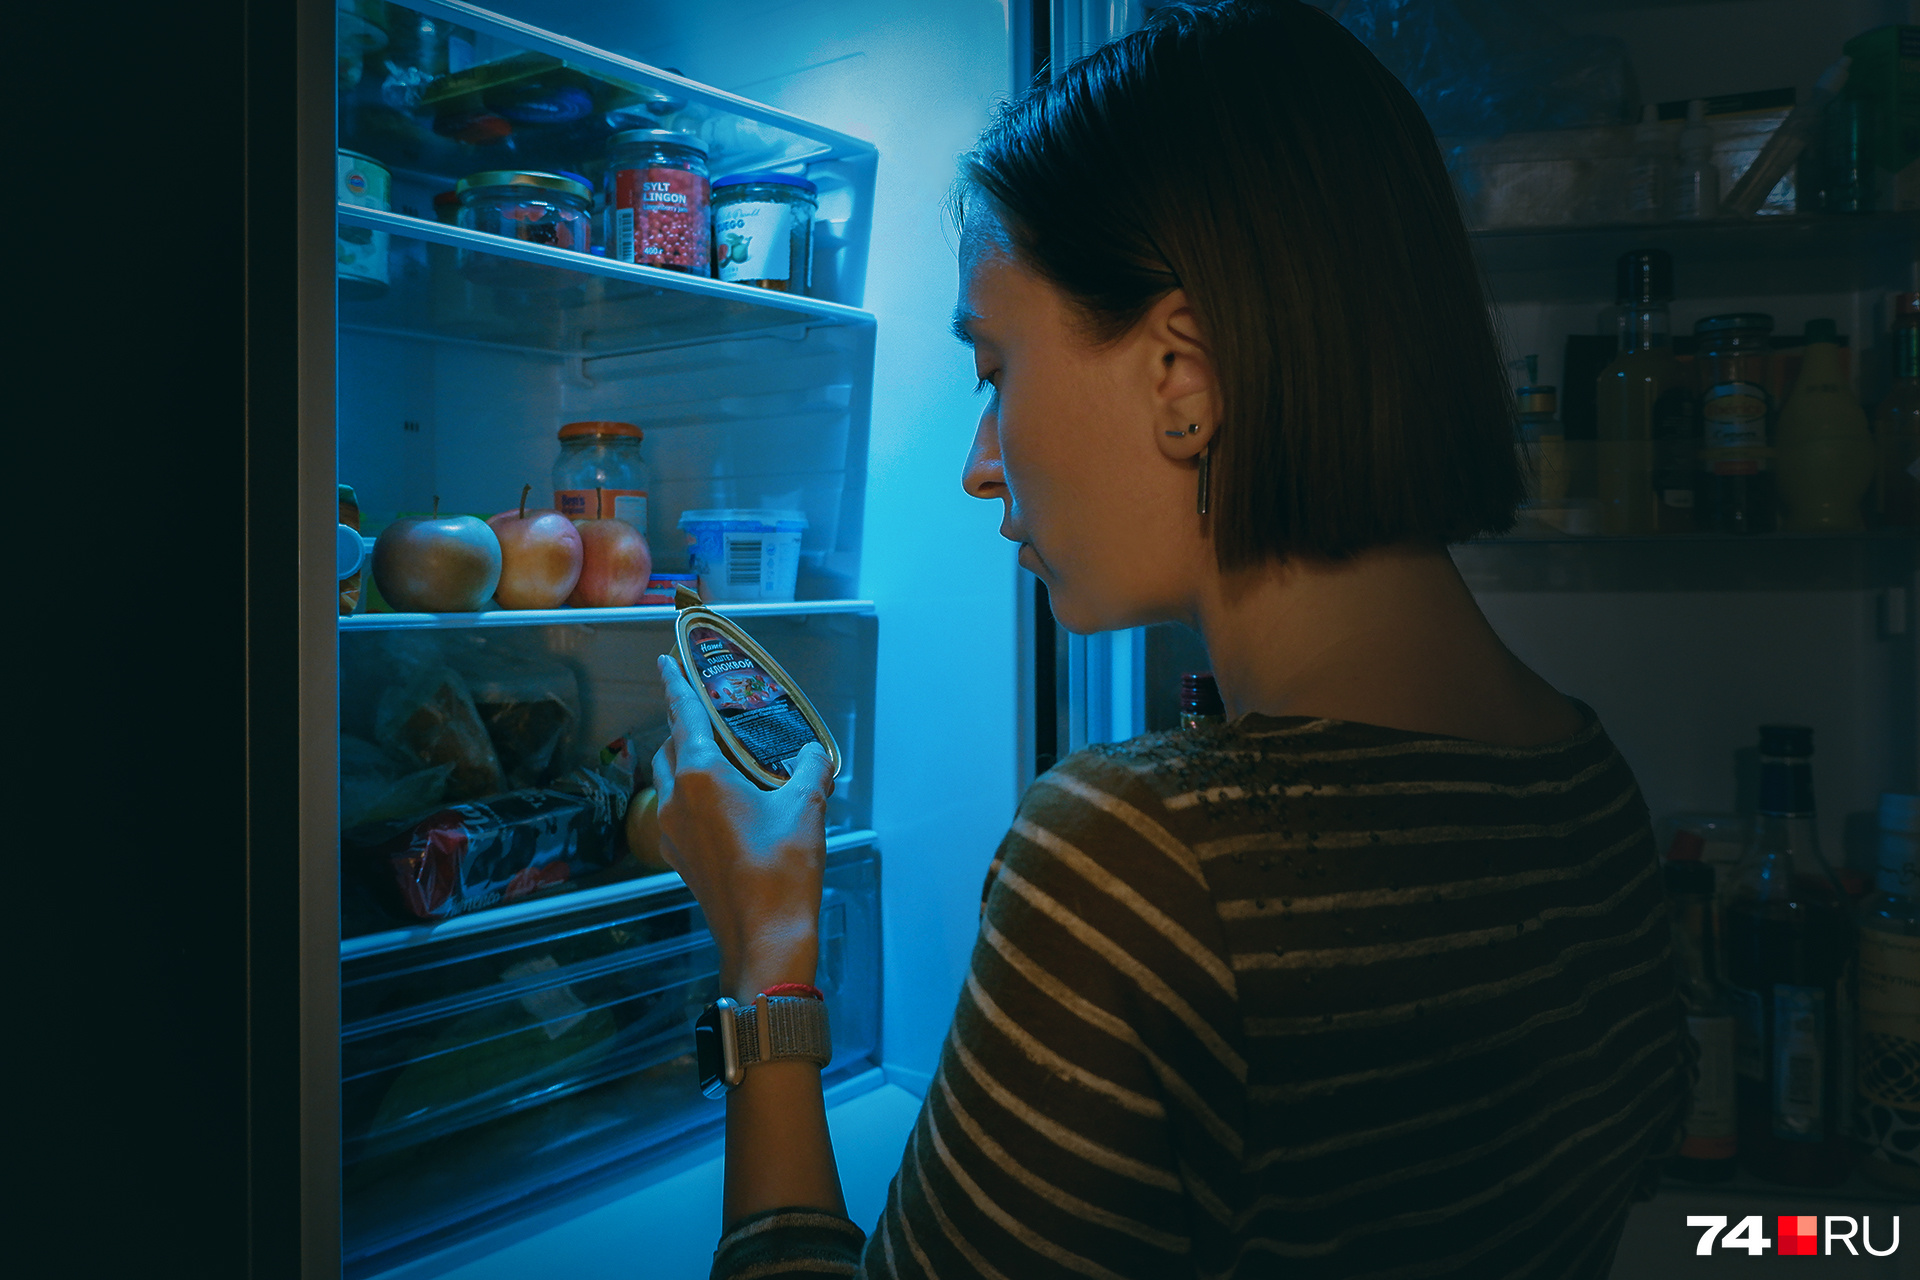 Ночные бега к холодильнику — почти вид спорта